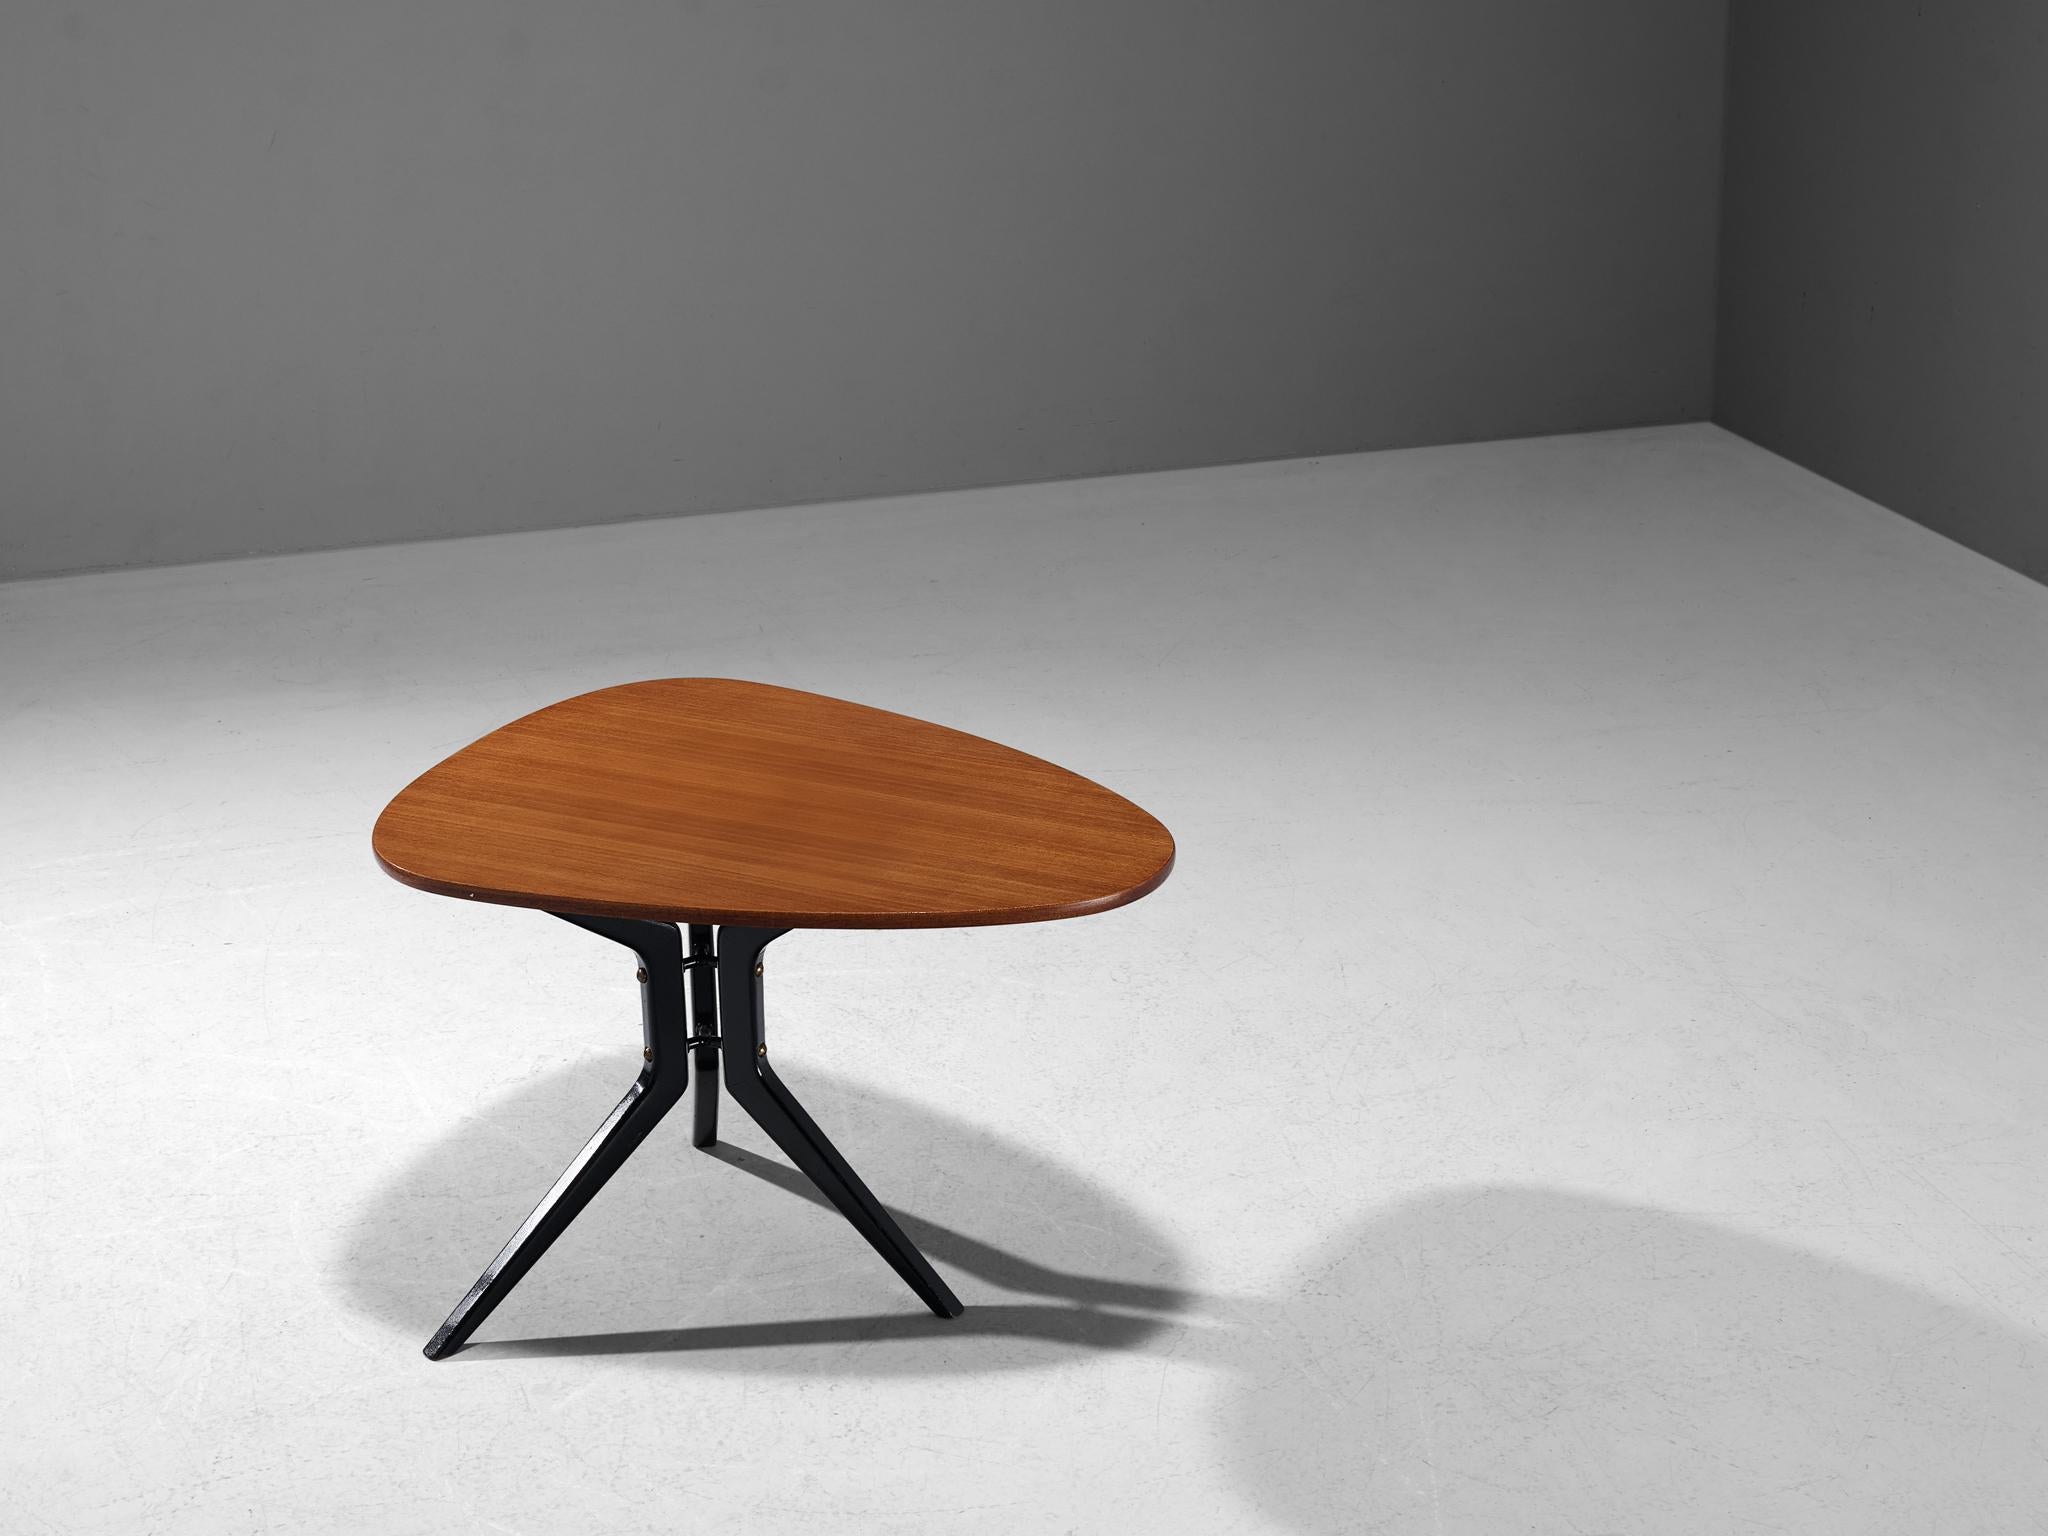 Table basse, teck, bois, Suède, années 1950.

Une belle et élégante table basse suédoise fabriquée dans les années 1950. Le plateau de la table est de forme triangulaire et est exécuté dans un placage de teck chaud. La table basse a une base à trois